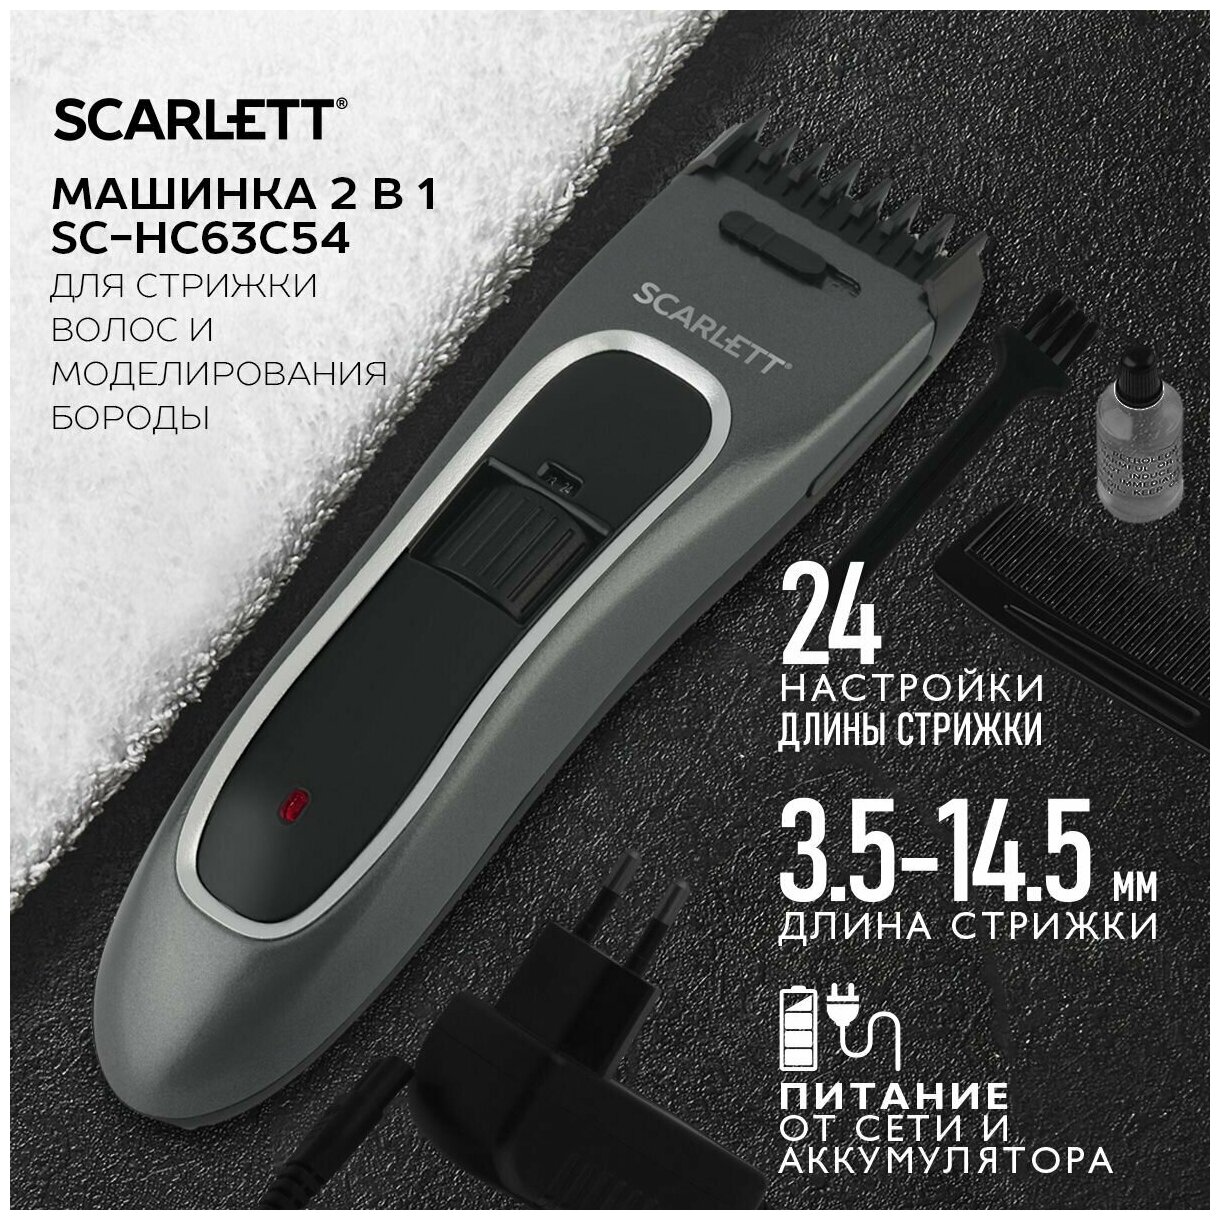 Машинка для стрижки волос Scarlett SC-HC63C54, аккумулятор+сеть